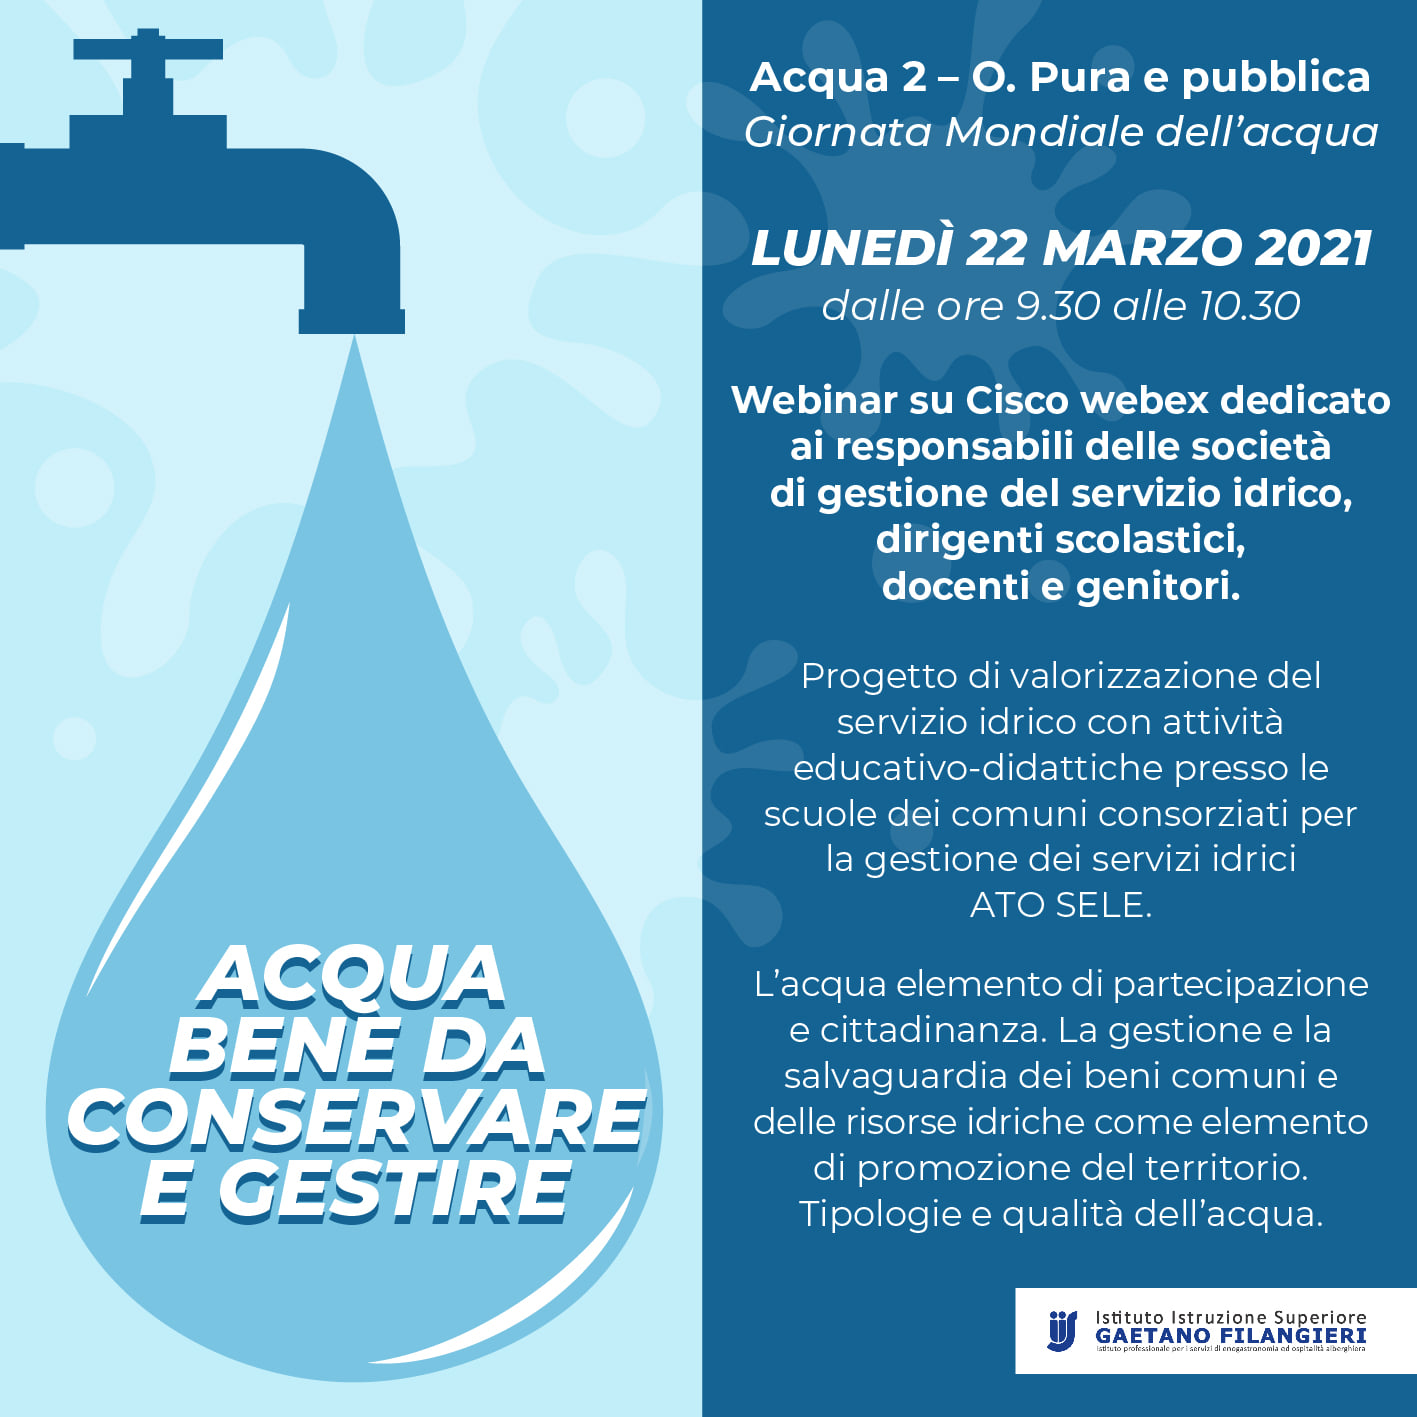 Giornata Mondiale dell’acqua, partecipa al webinar che si terrà Lunedì 22 Marzo